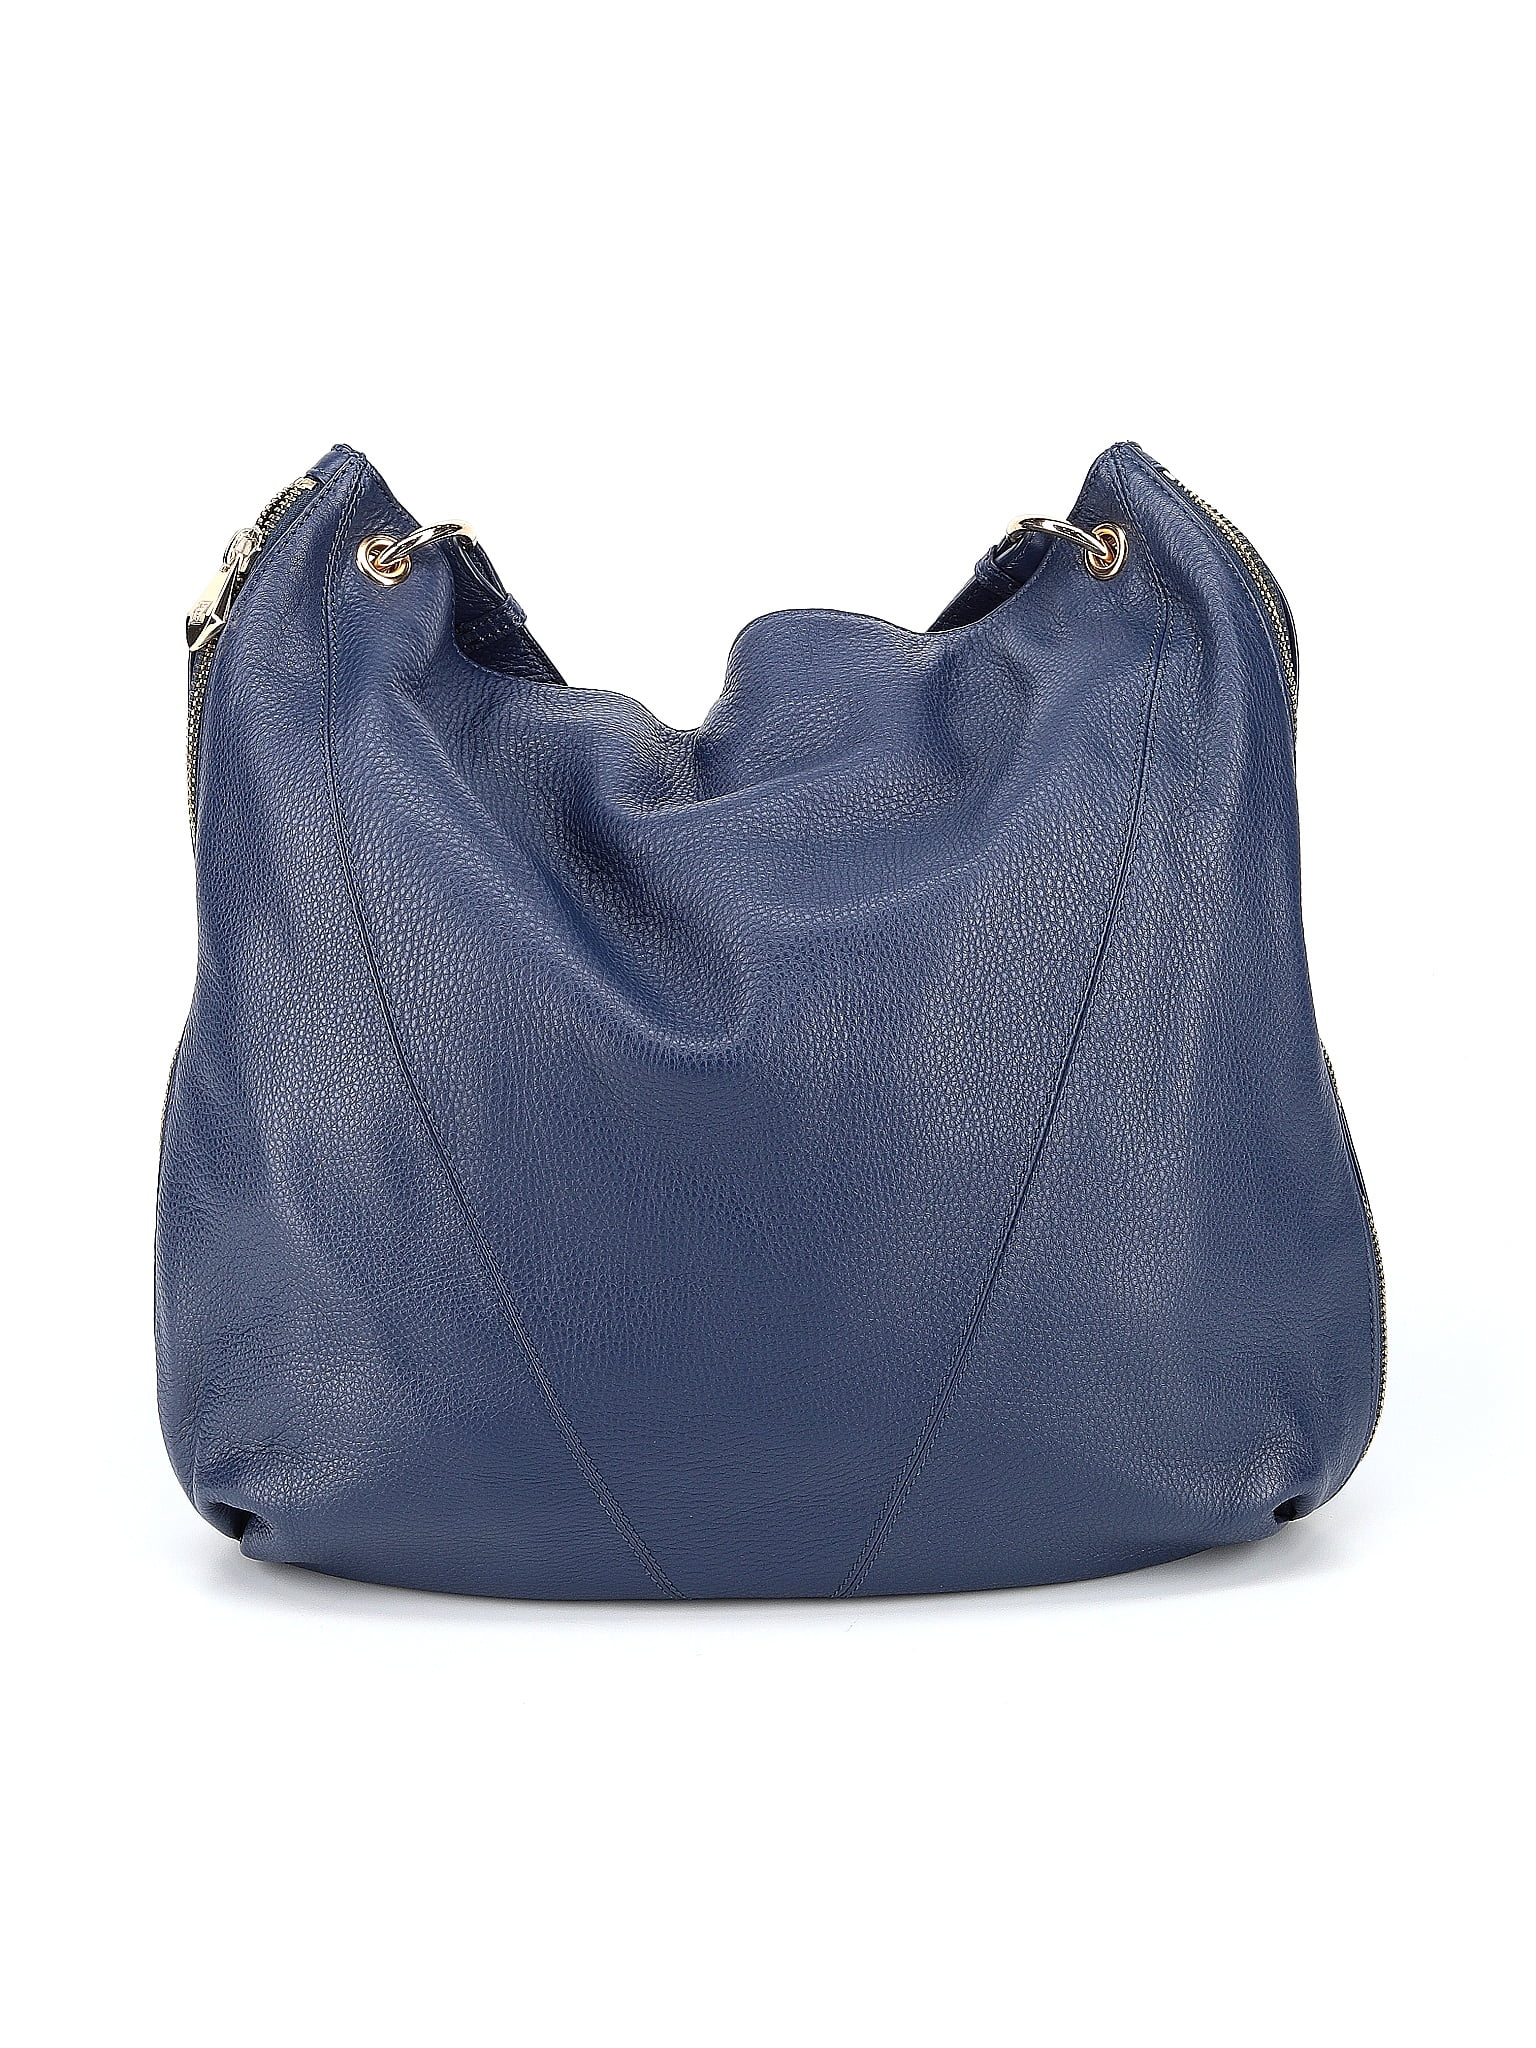 Pour La Victoire Pebbled %Cowhide Leather Handbag Black Clean,lg